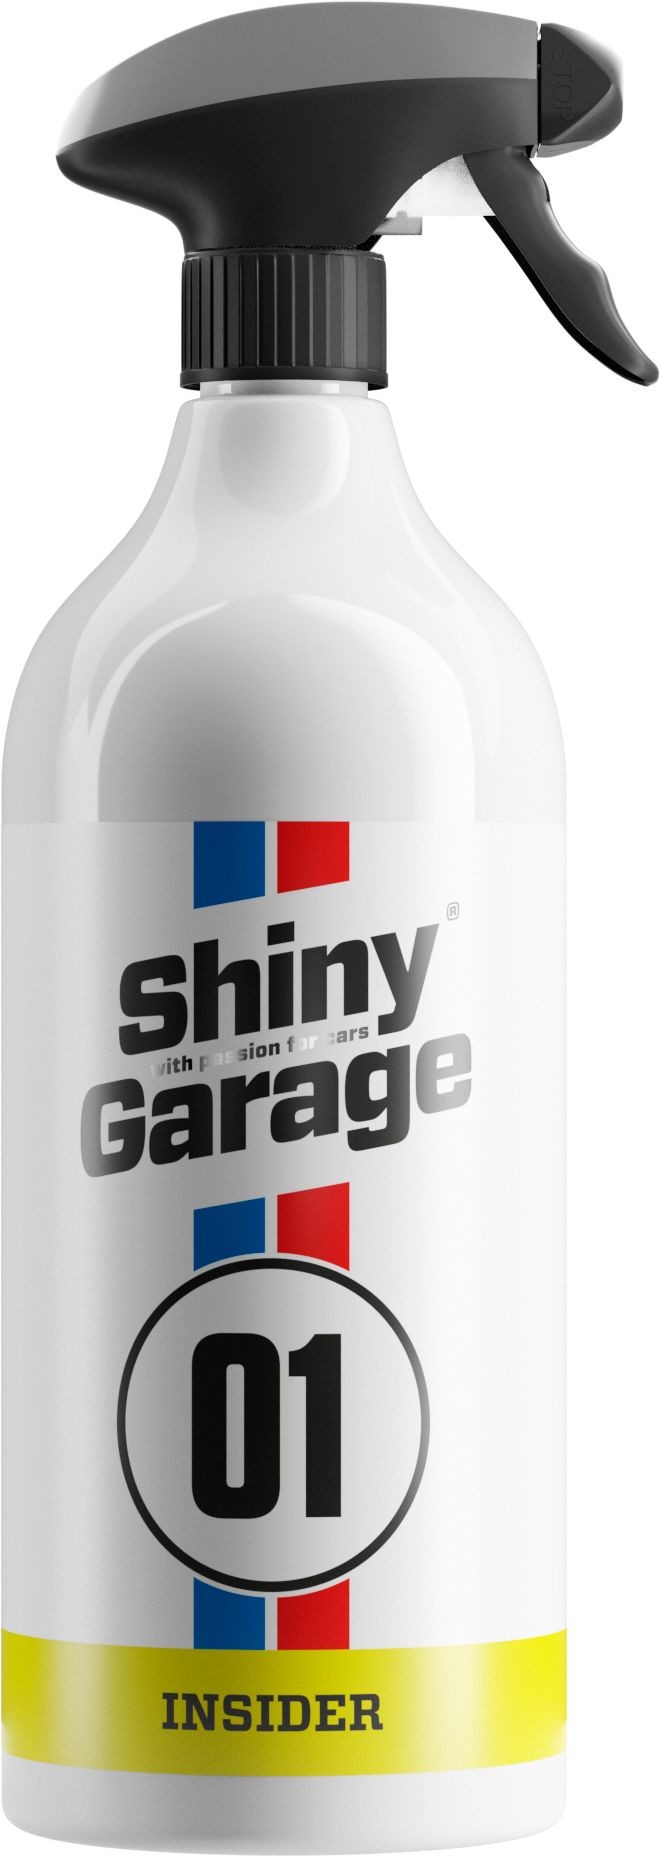 Shiny Garage Insider preparat do czyszczenia wnętrza, gotowy do użycia 1L Shi000199